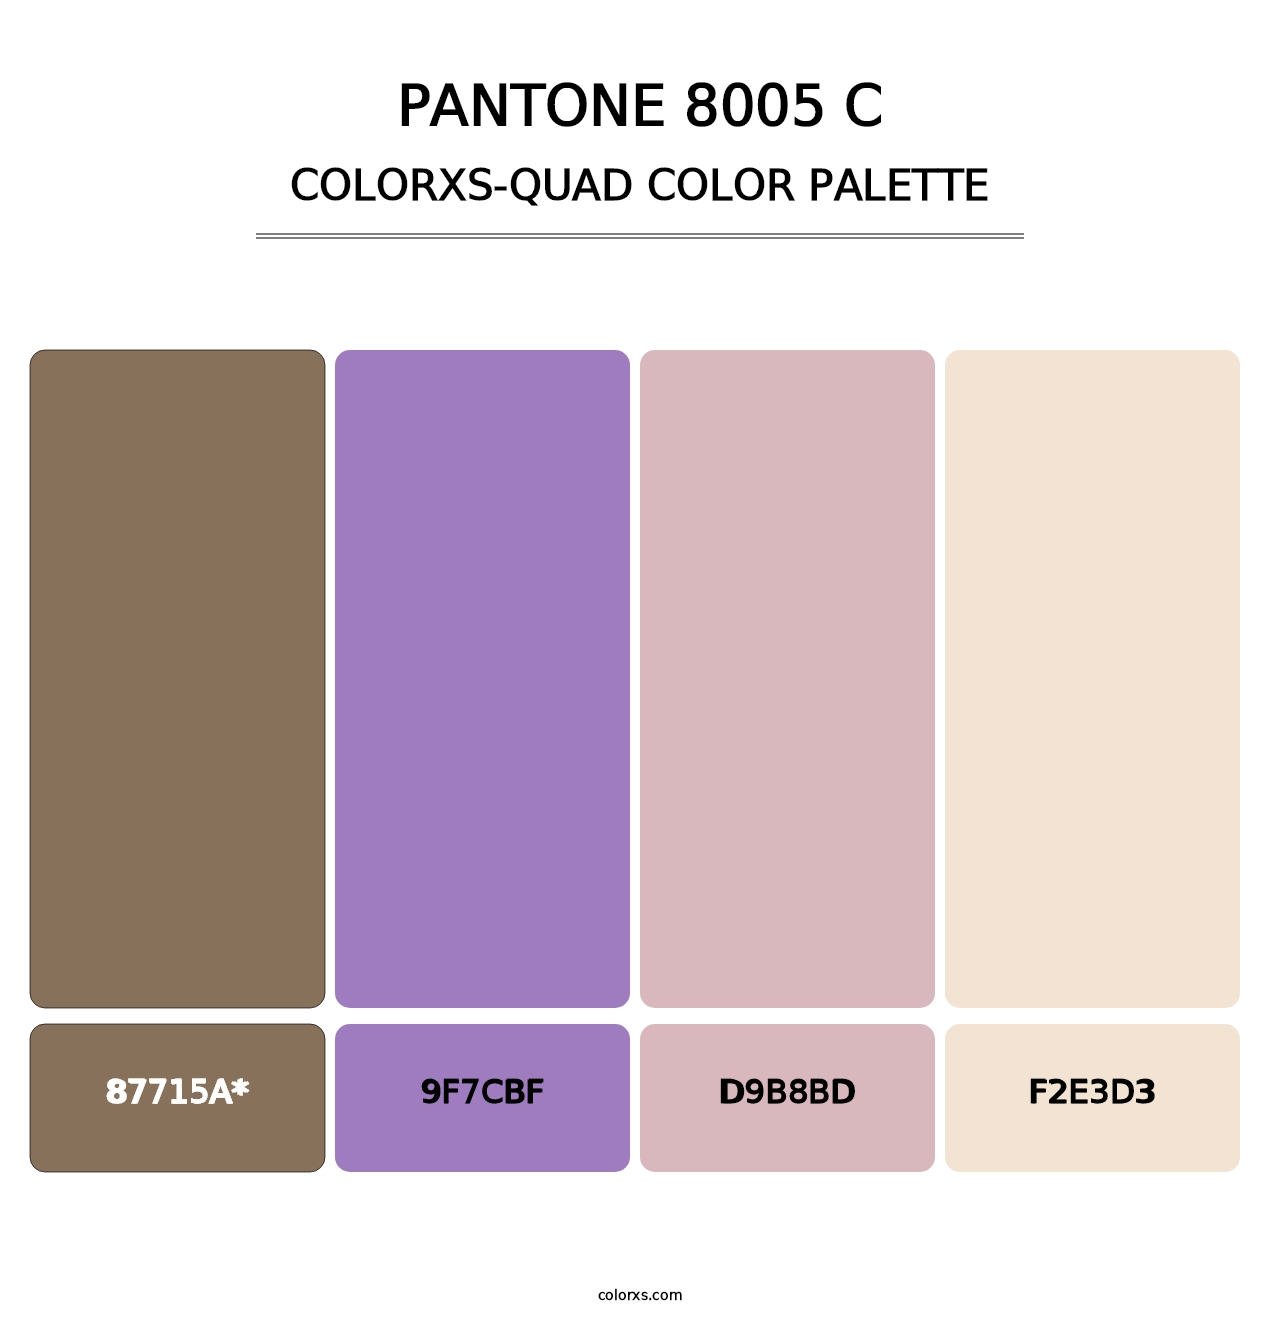 PANTONE 8005 C - Colorxs Quad Palette